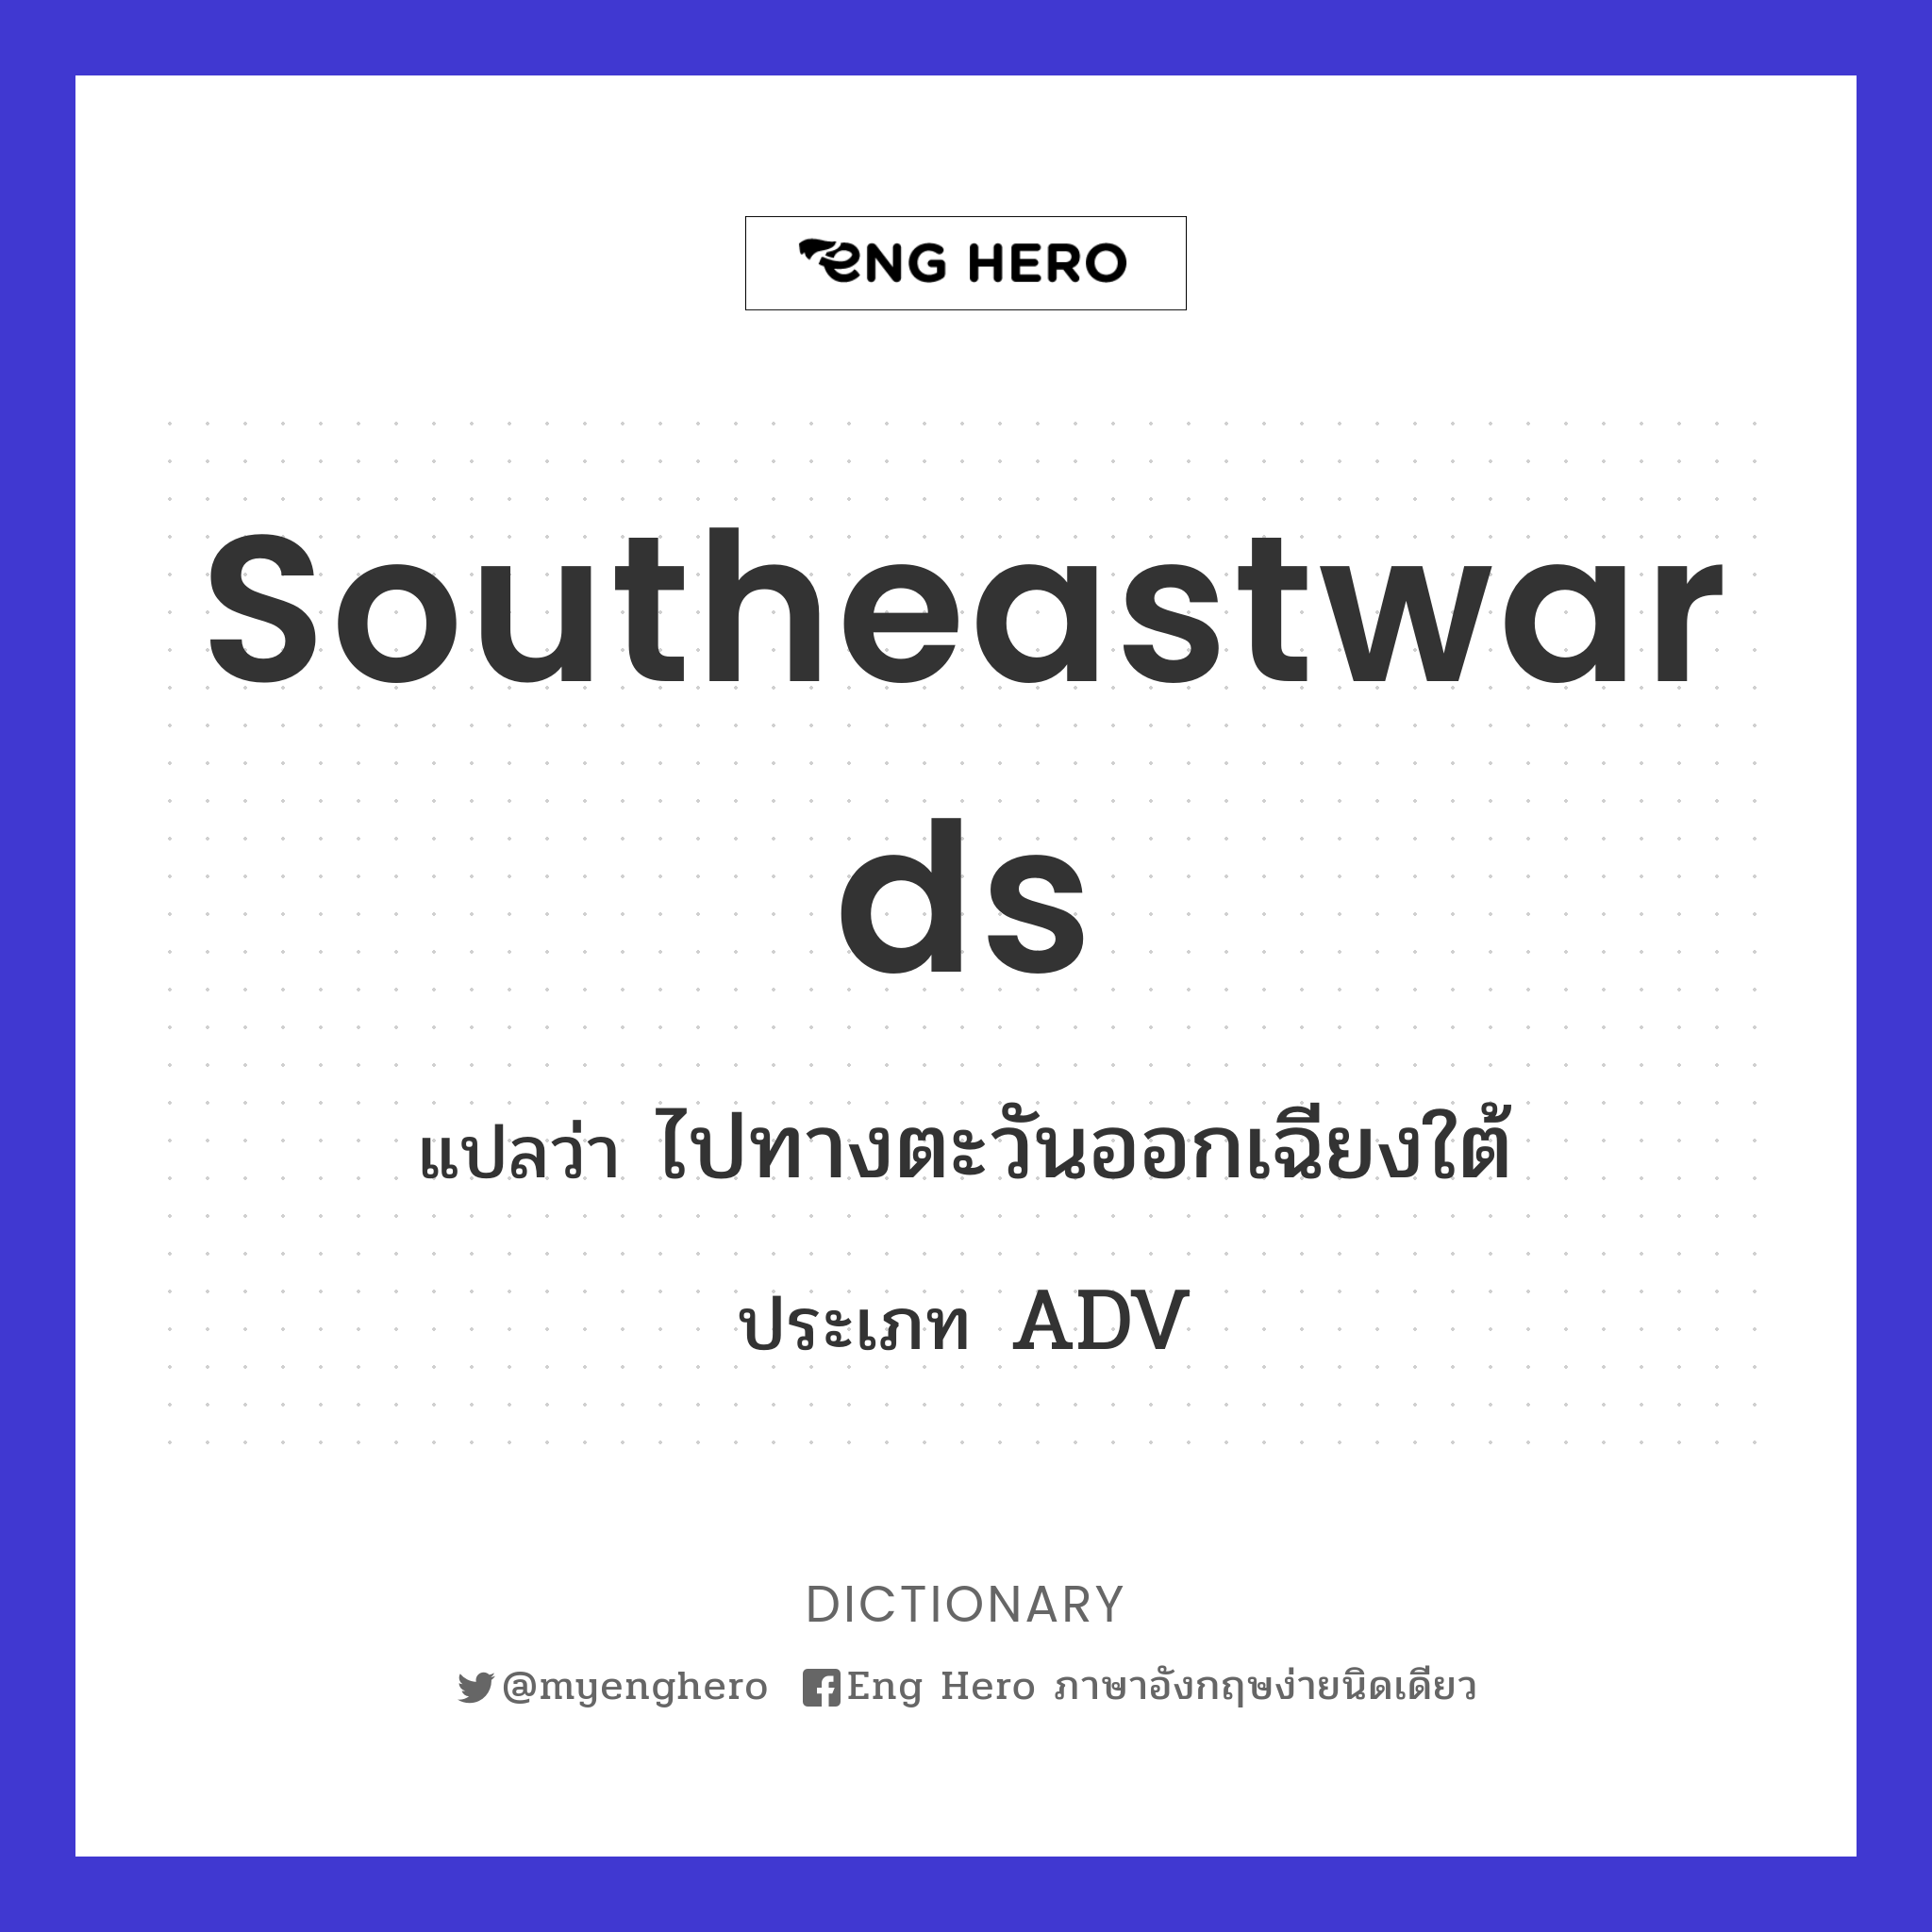 southeastwards